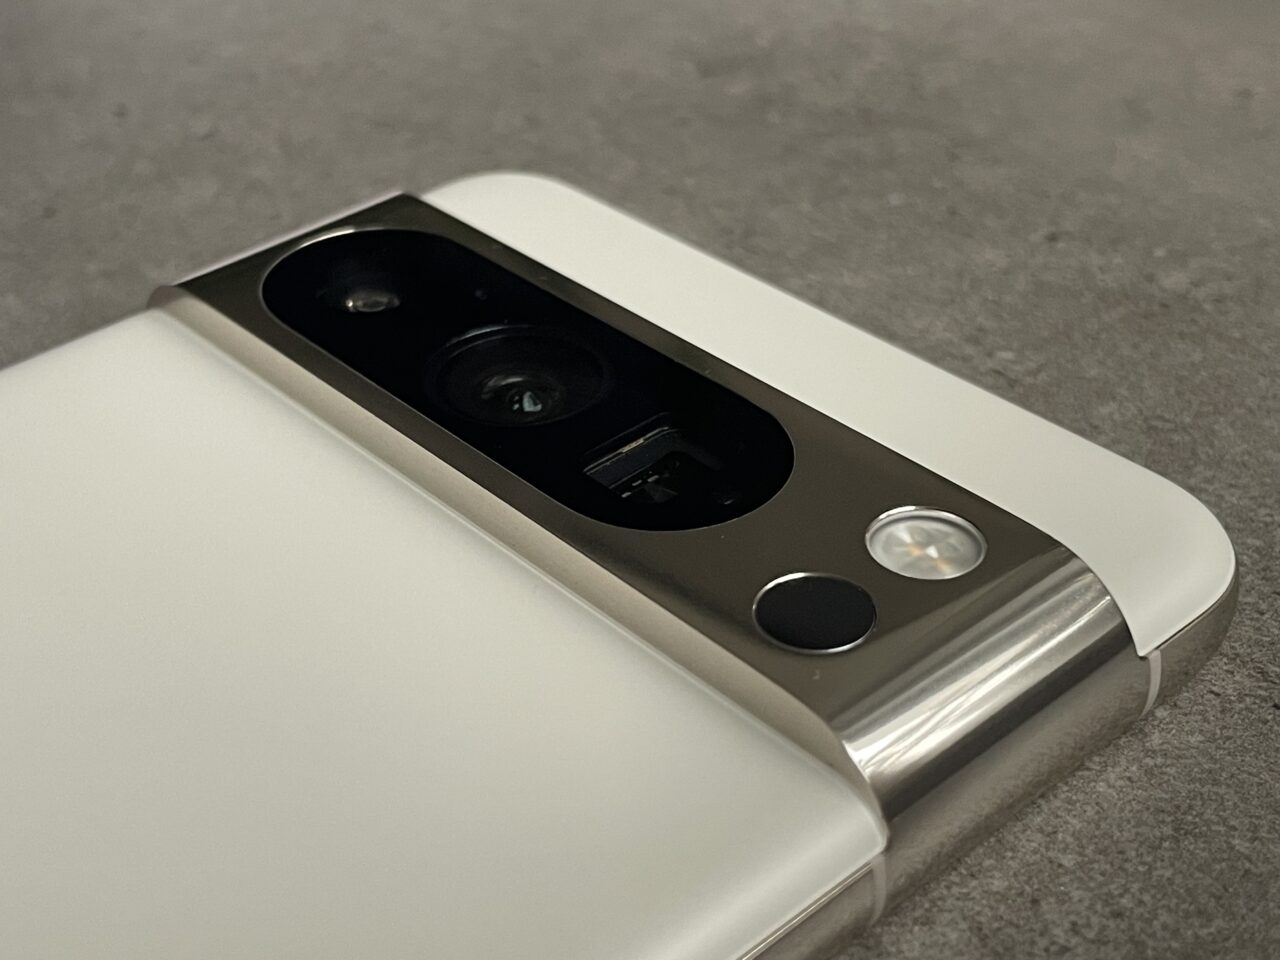 Aparat i błysk smartfona z podwójnym obiektywem umieszczony na metalowej krawędzi, z białą tylną obudową.